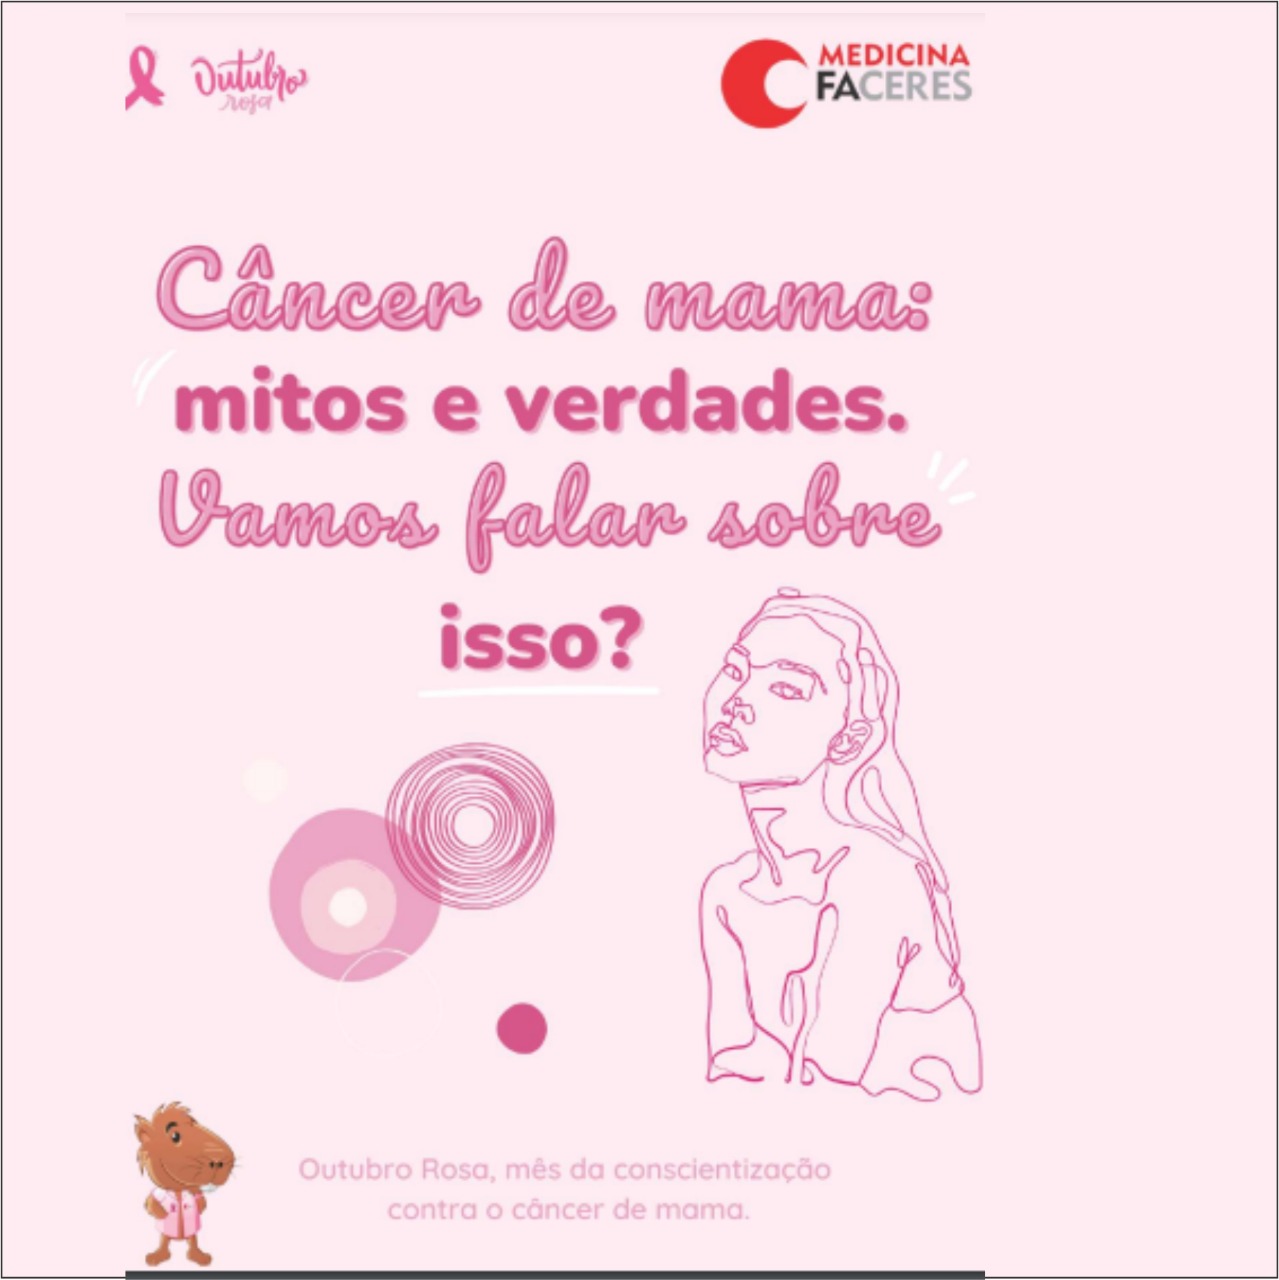 Projeto “Mitos e verdades – outubro rosa”, compartilha informações e promove a sensibilização sobre a prevenção do câncer de mama